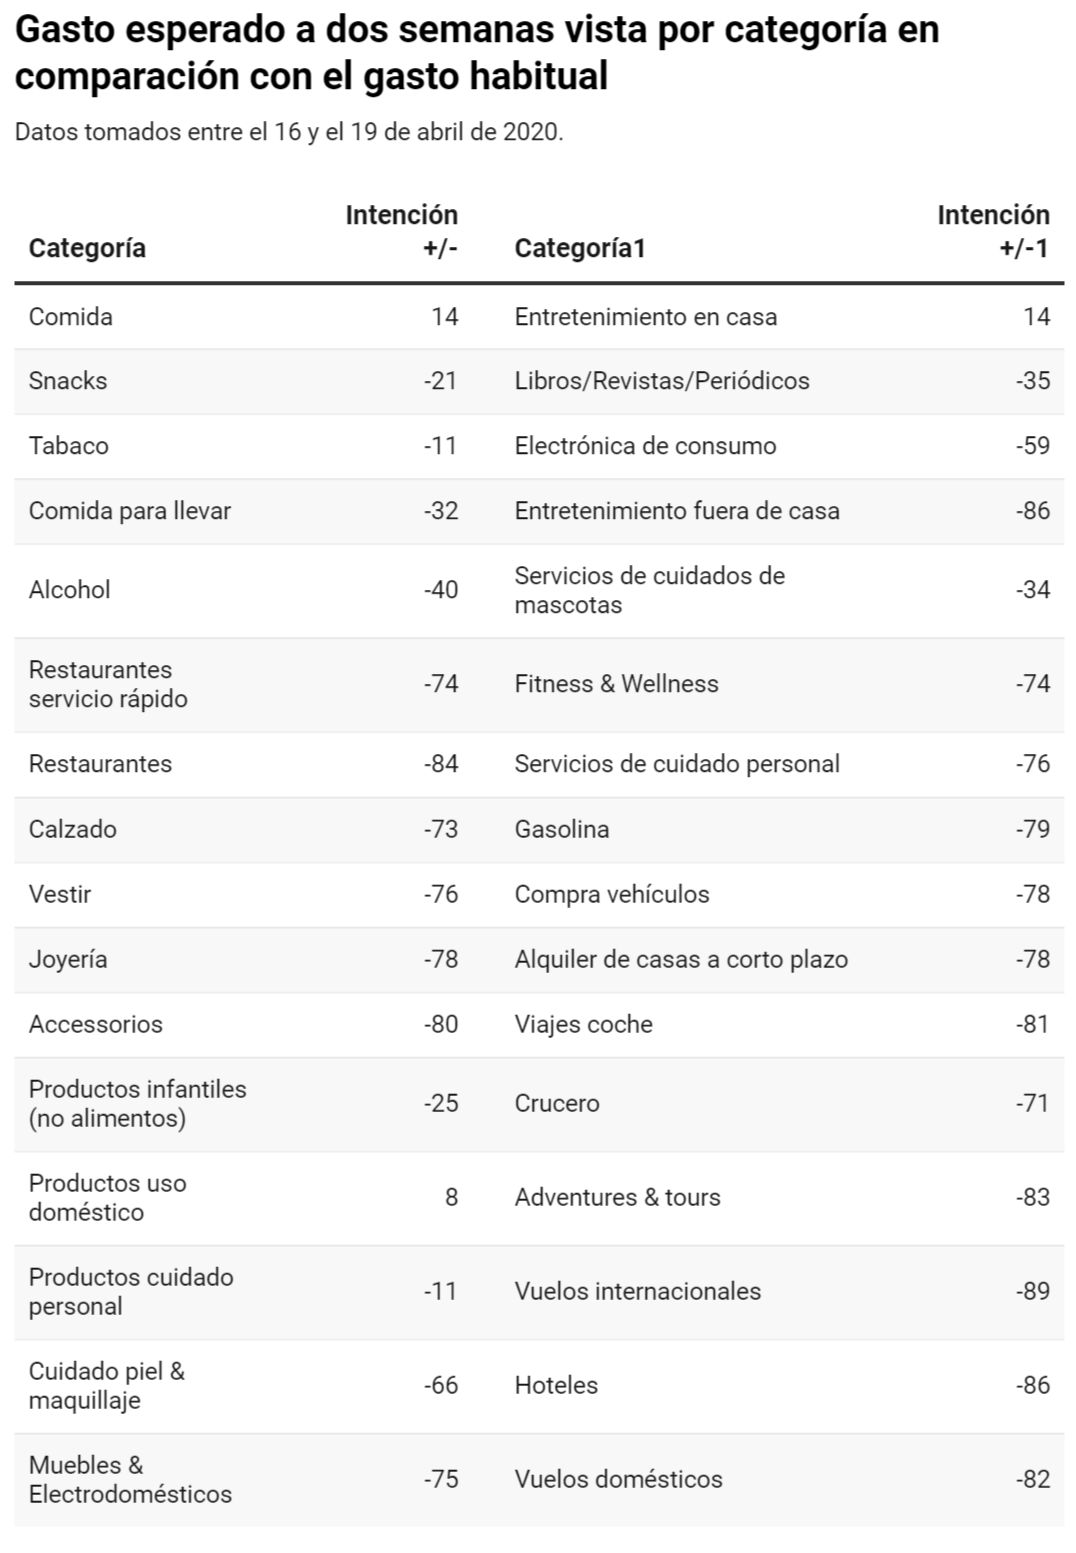 Fuente: McKinsey survey 2020: Spanish consumers sentiment during coronavirus crisis. 